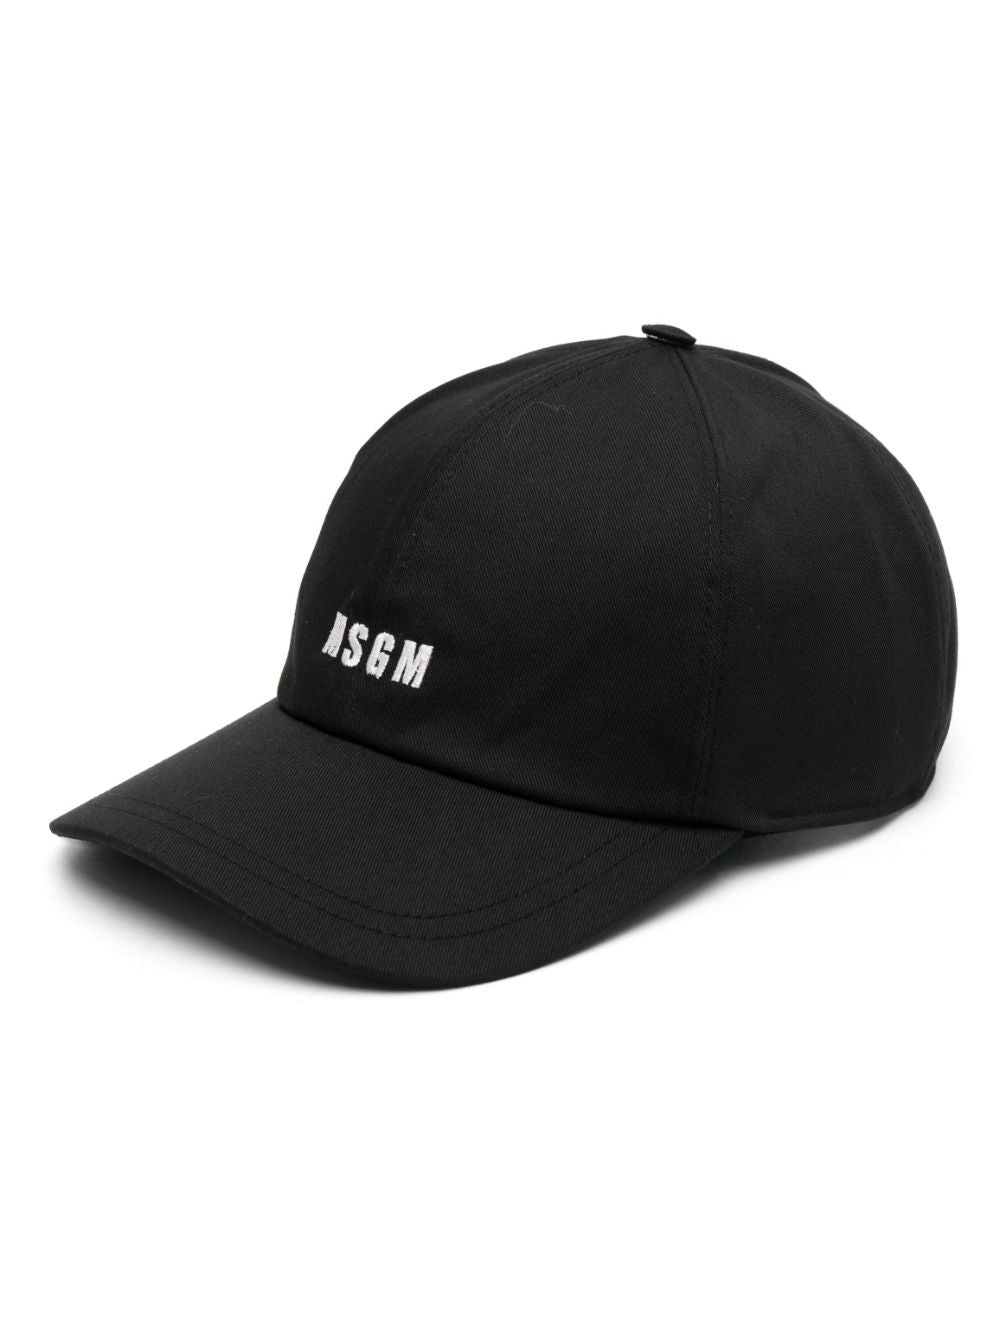 MSGM BLACK LOGO CAP